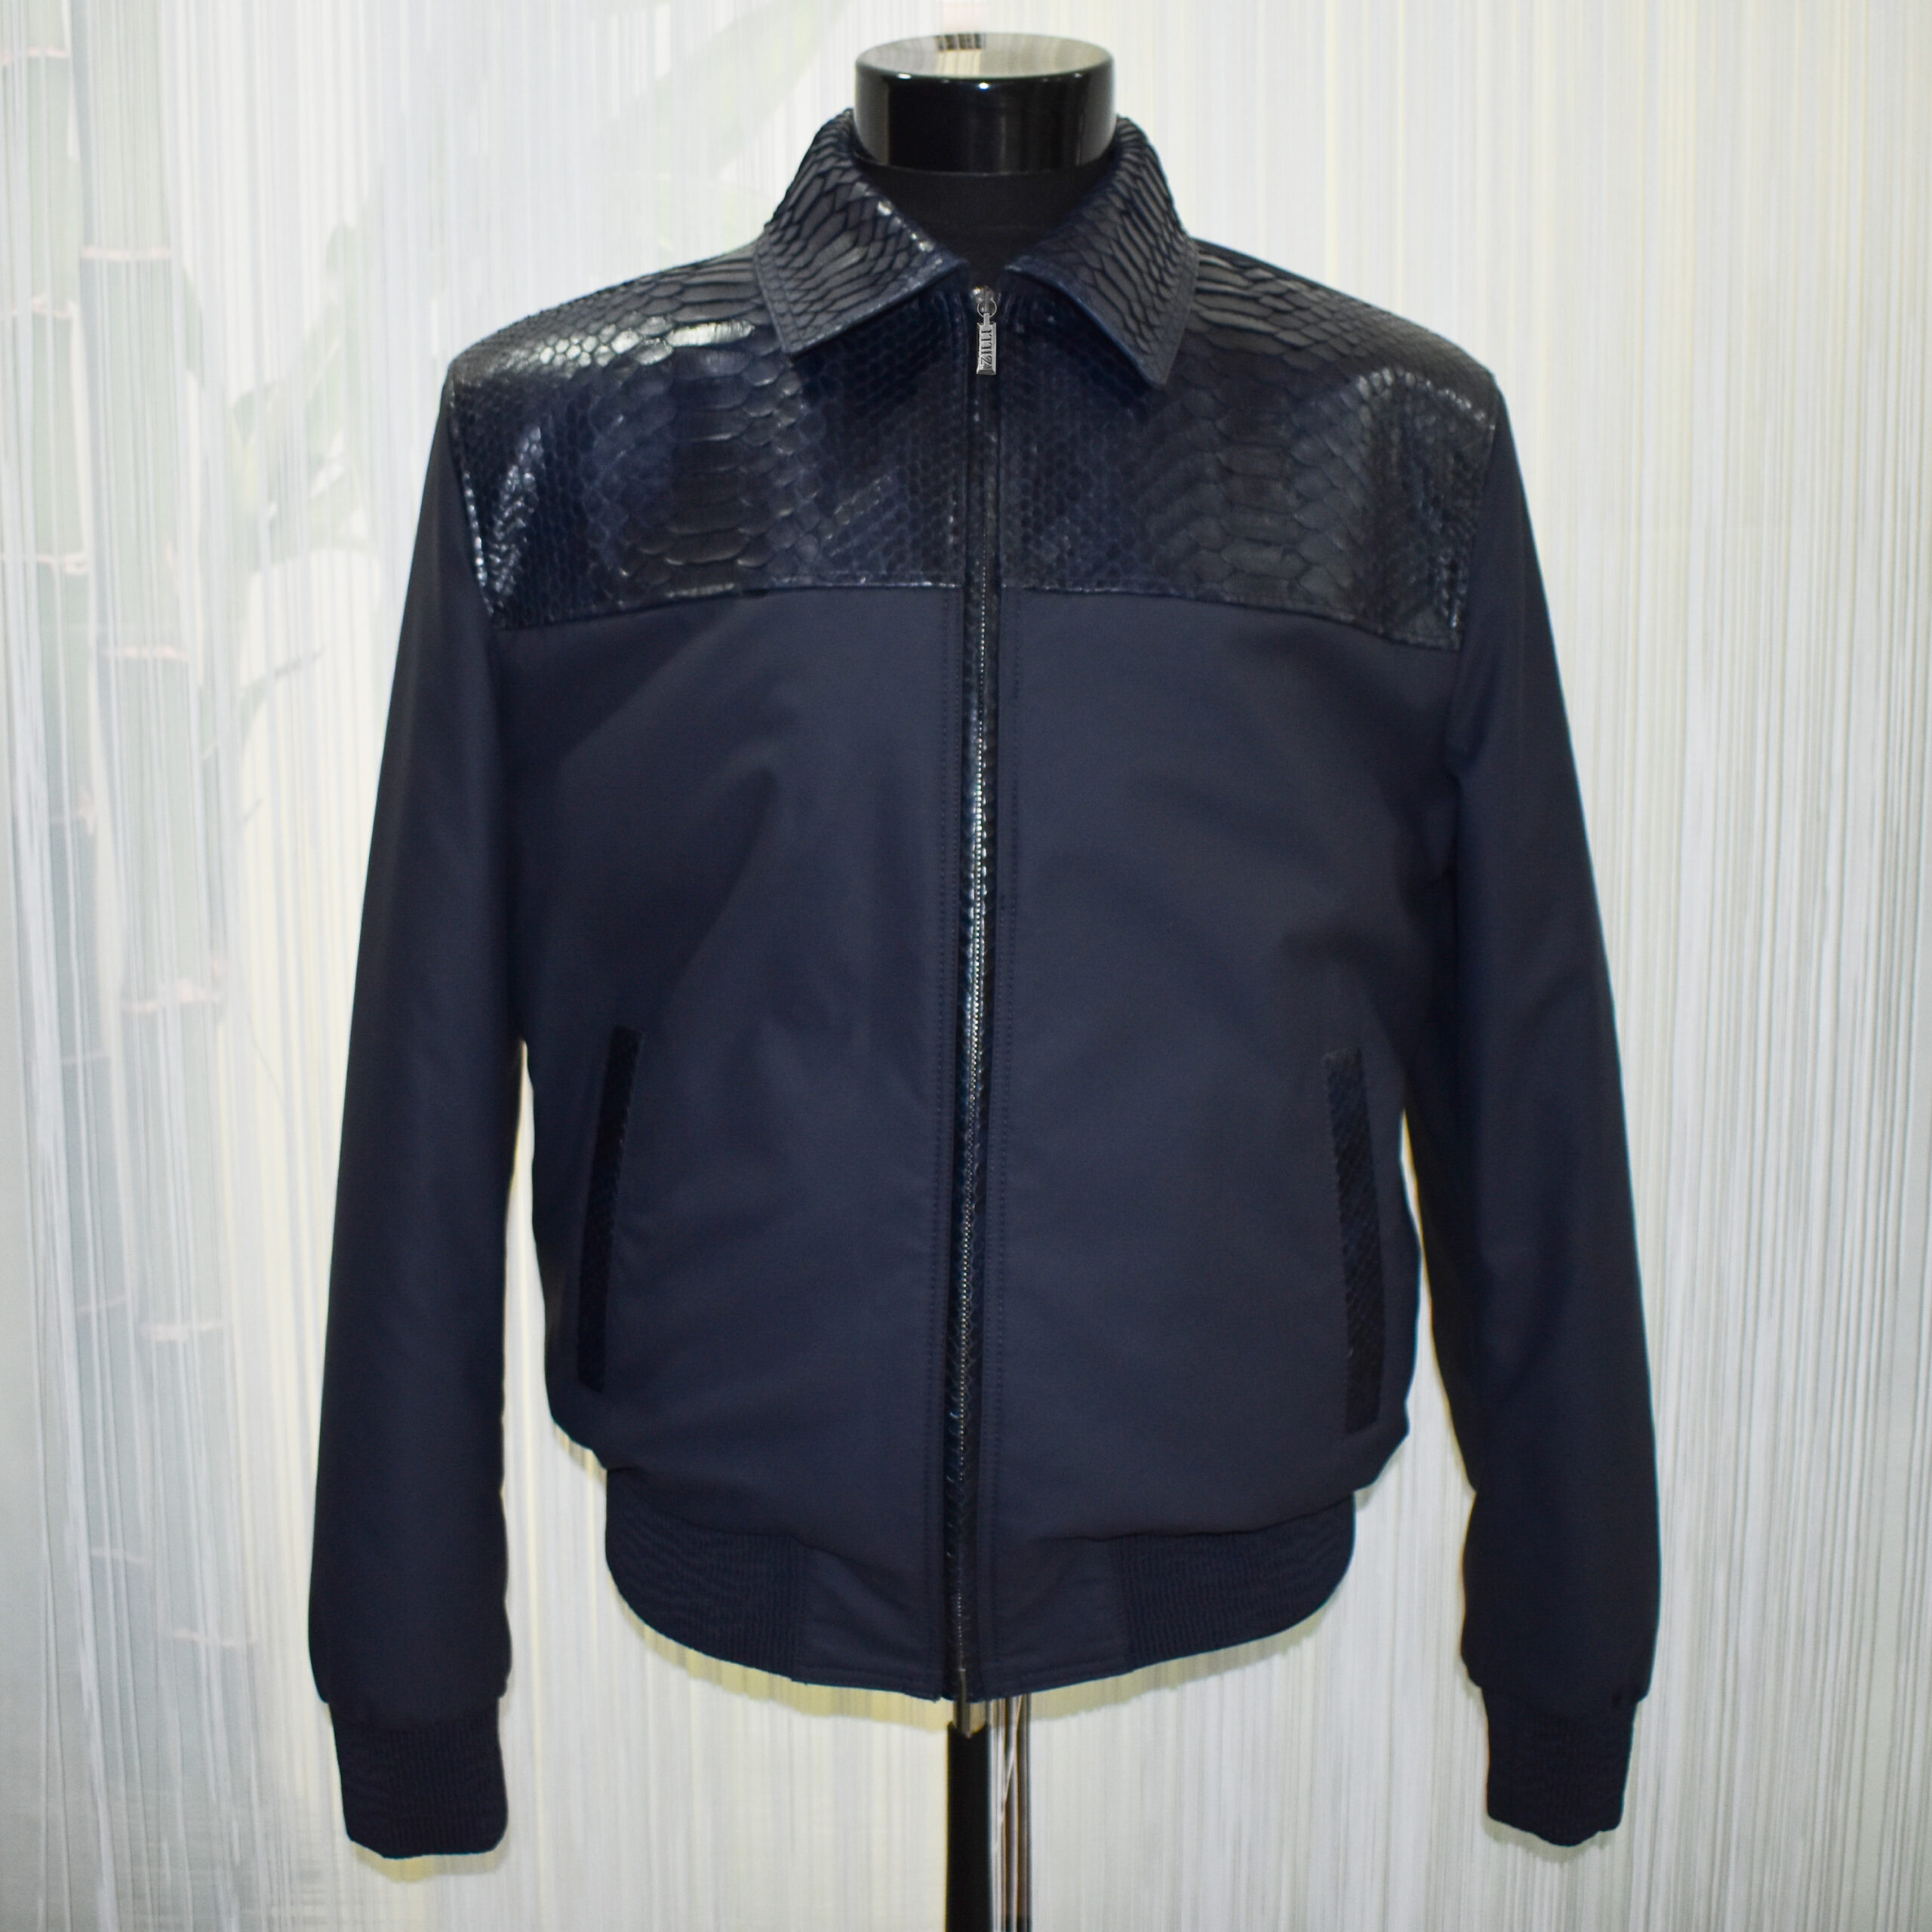 Python Trim Bomber Jacket - Leather Guys: Luxury Leather jackets